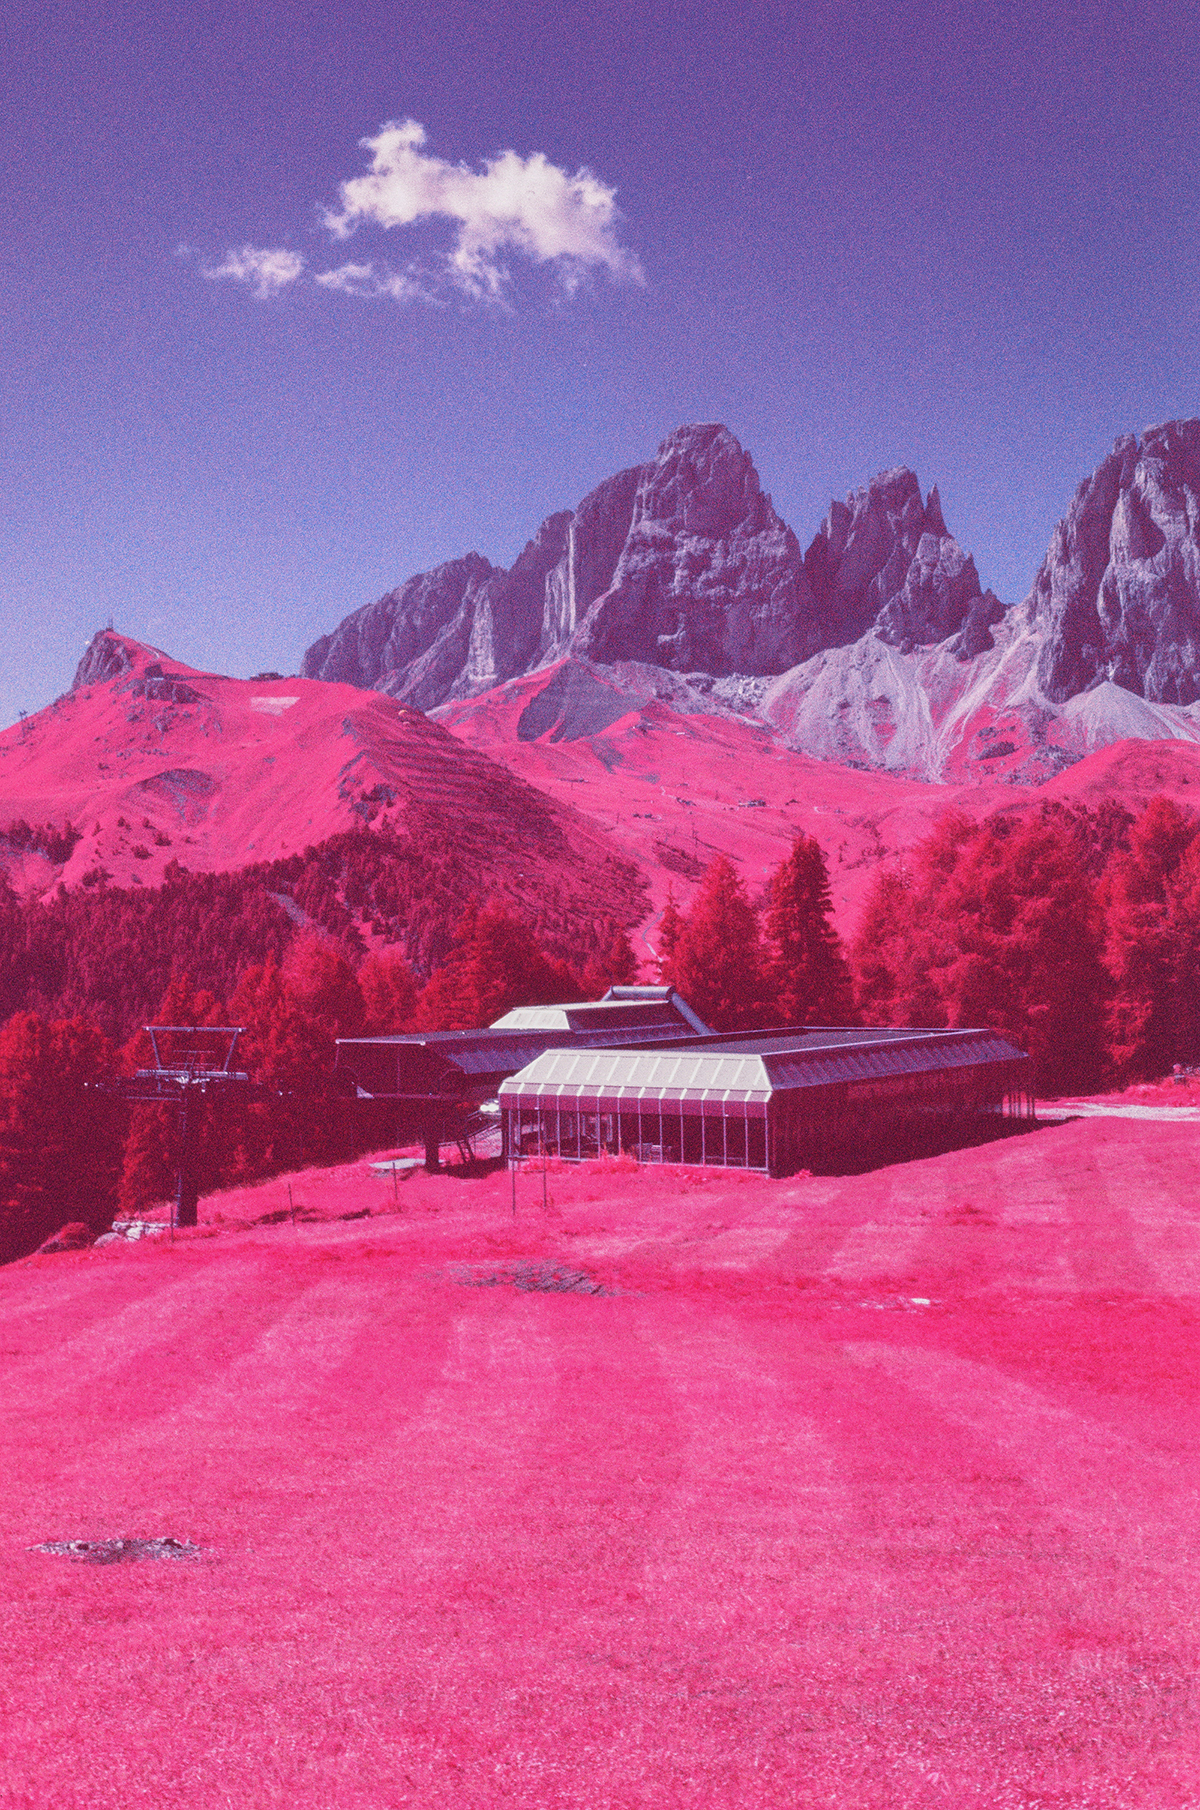 Dolomiti infrared Aerochrome dolomites mountains Landscape analog Film   35mm dolomitesininfrared